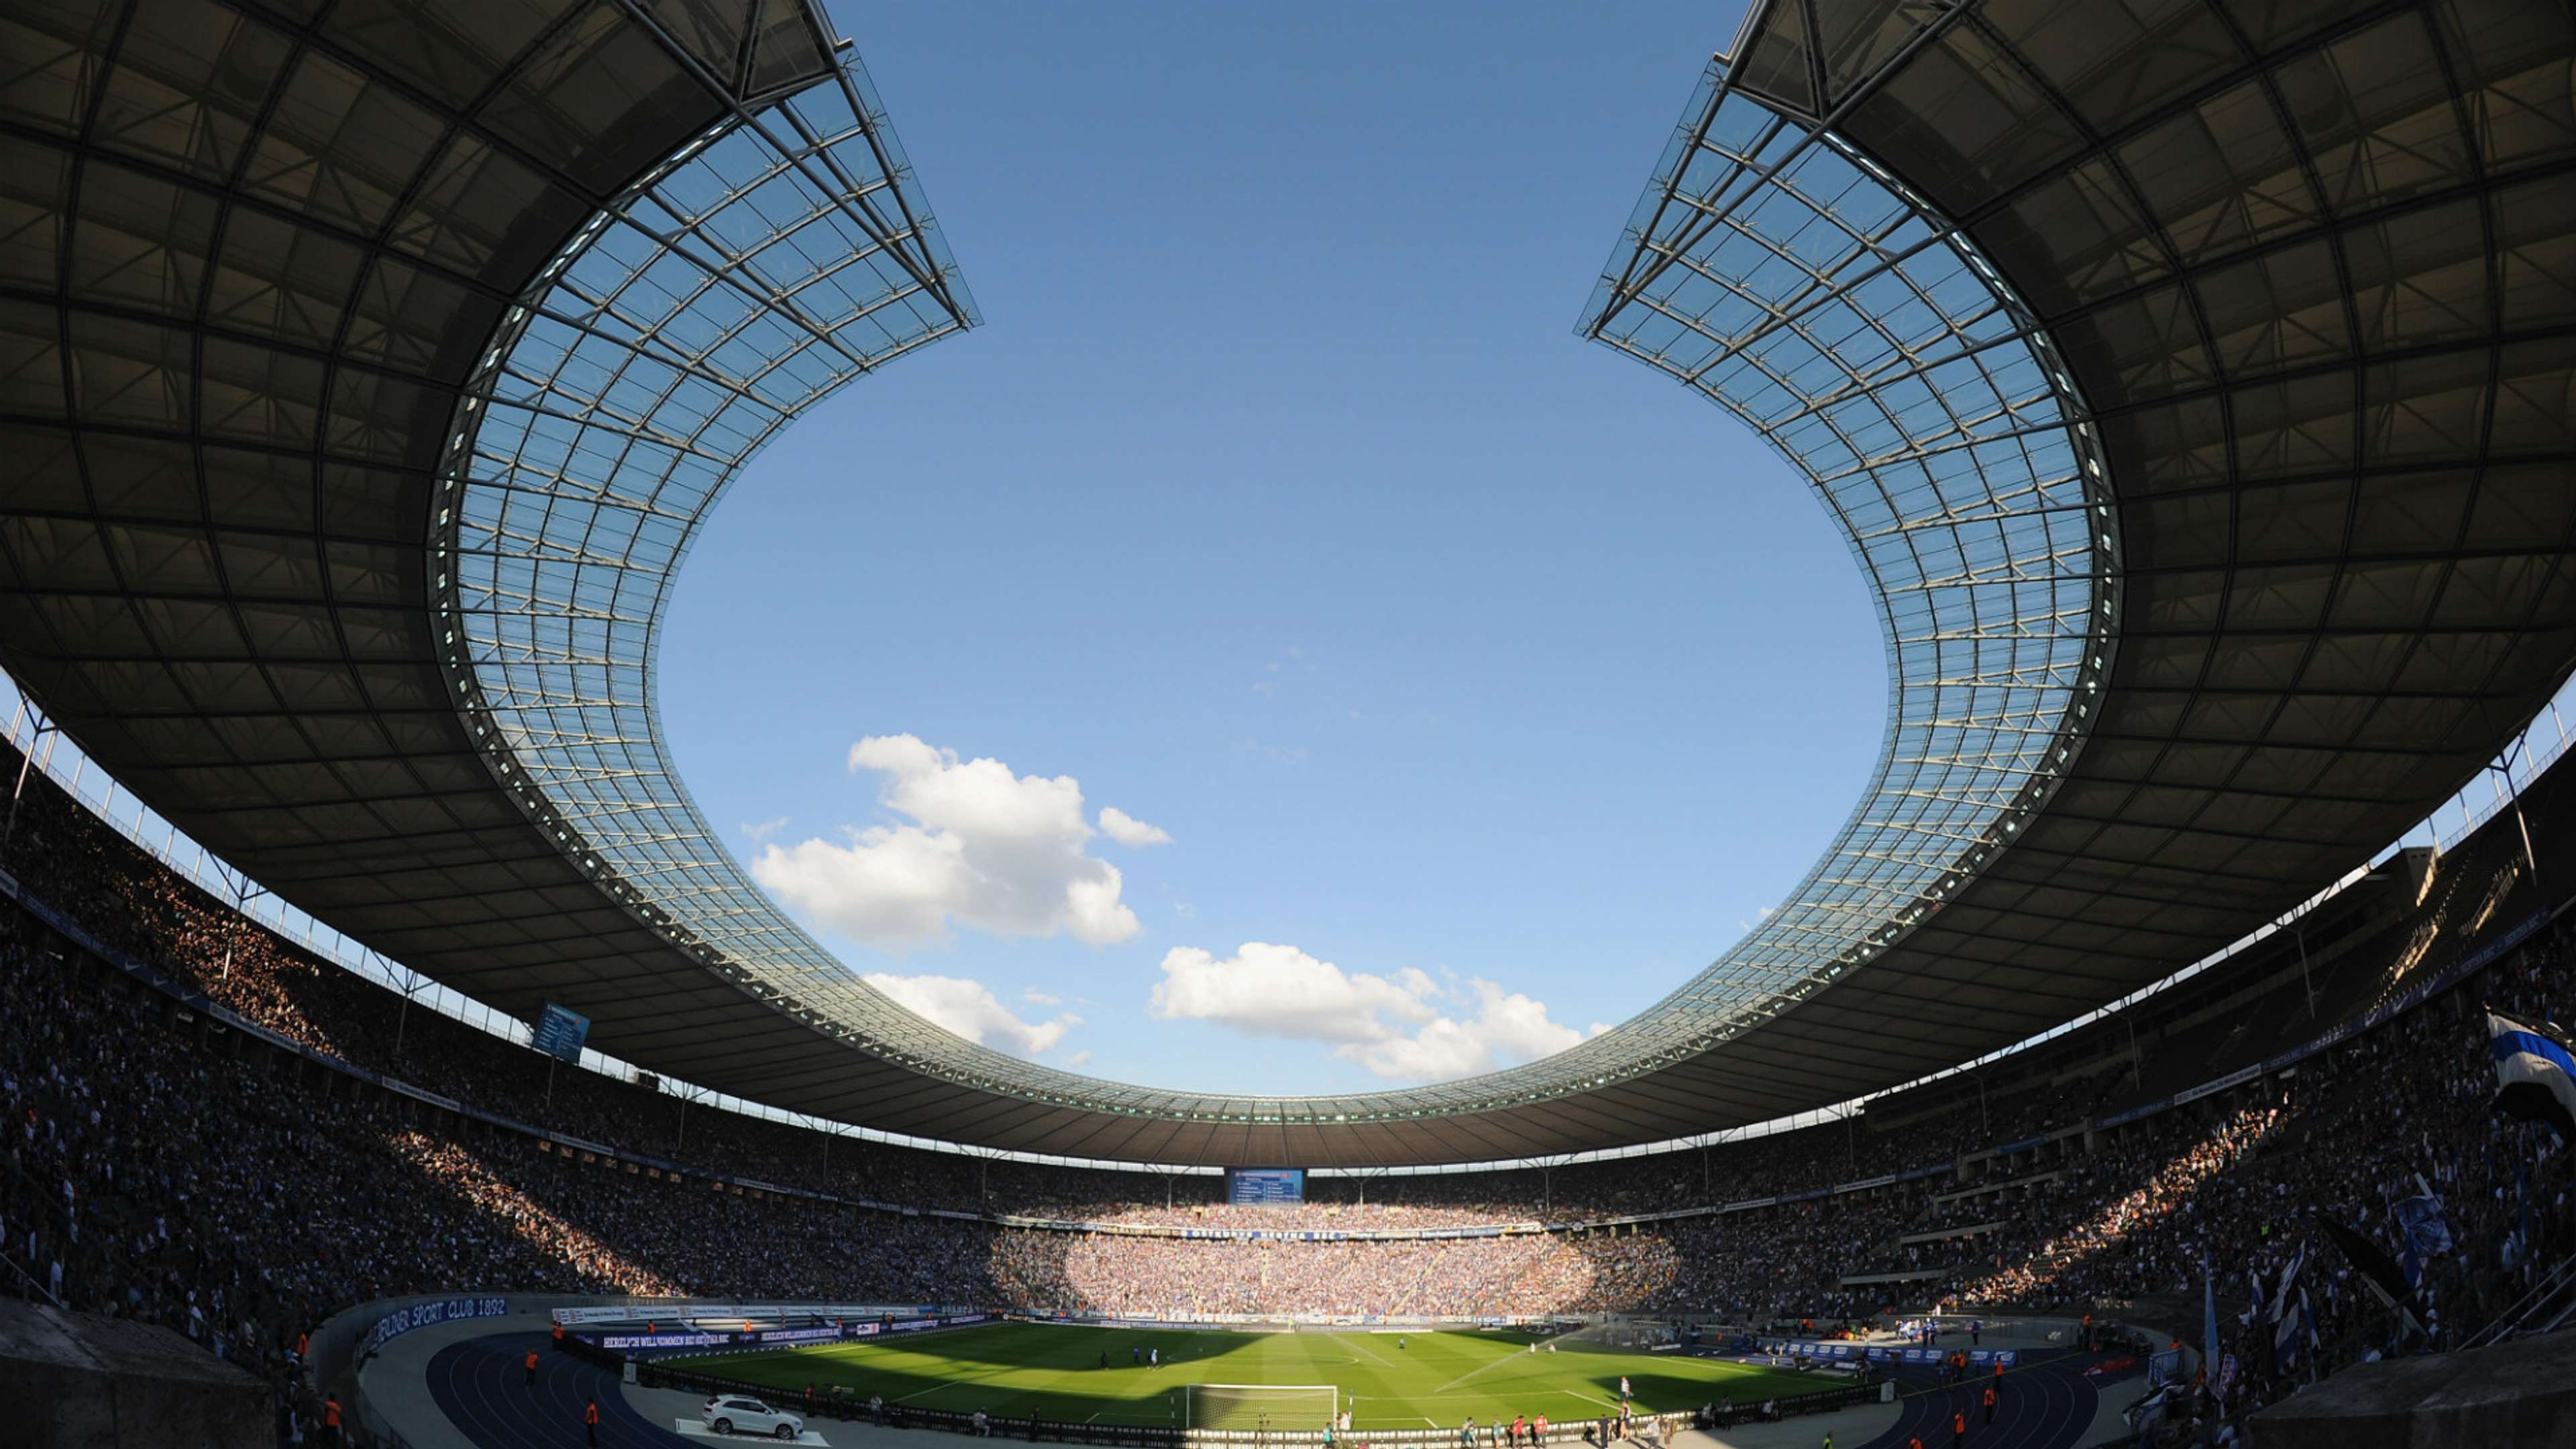 El 06 de junio se disputará la gran final de la UEFA Champions League en el Olympiastadion de Berlín